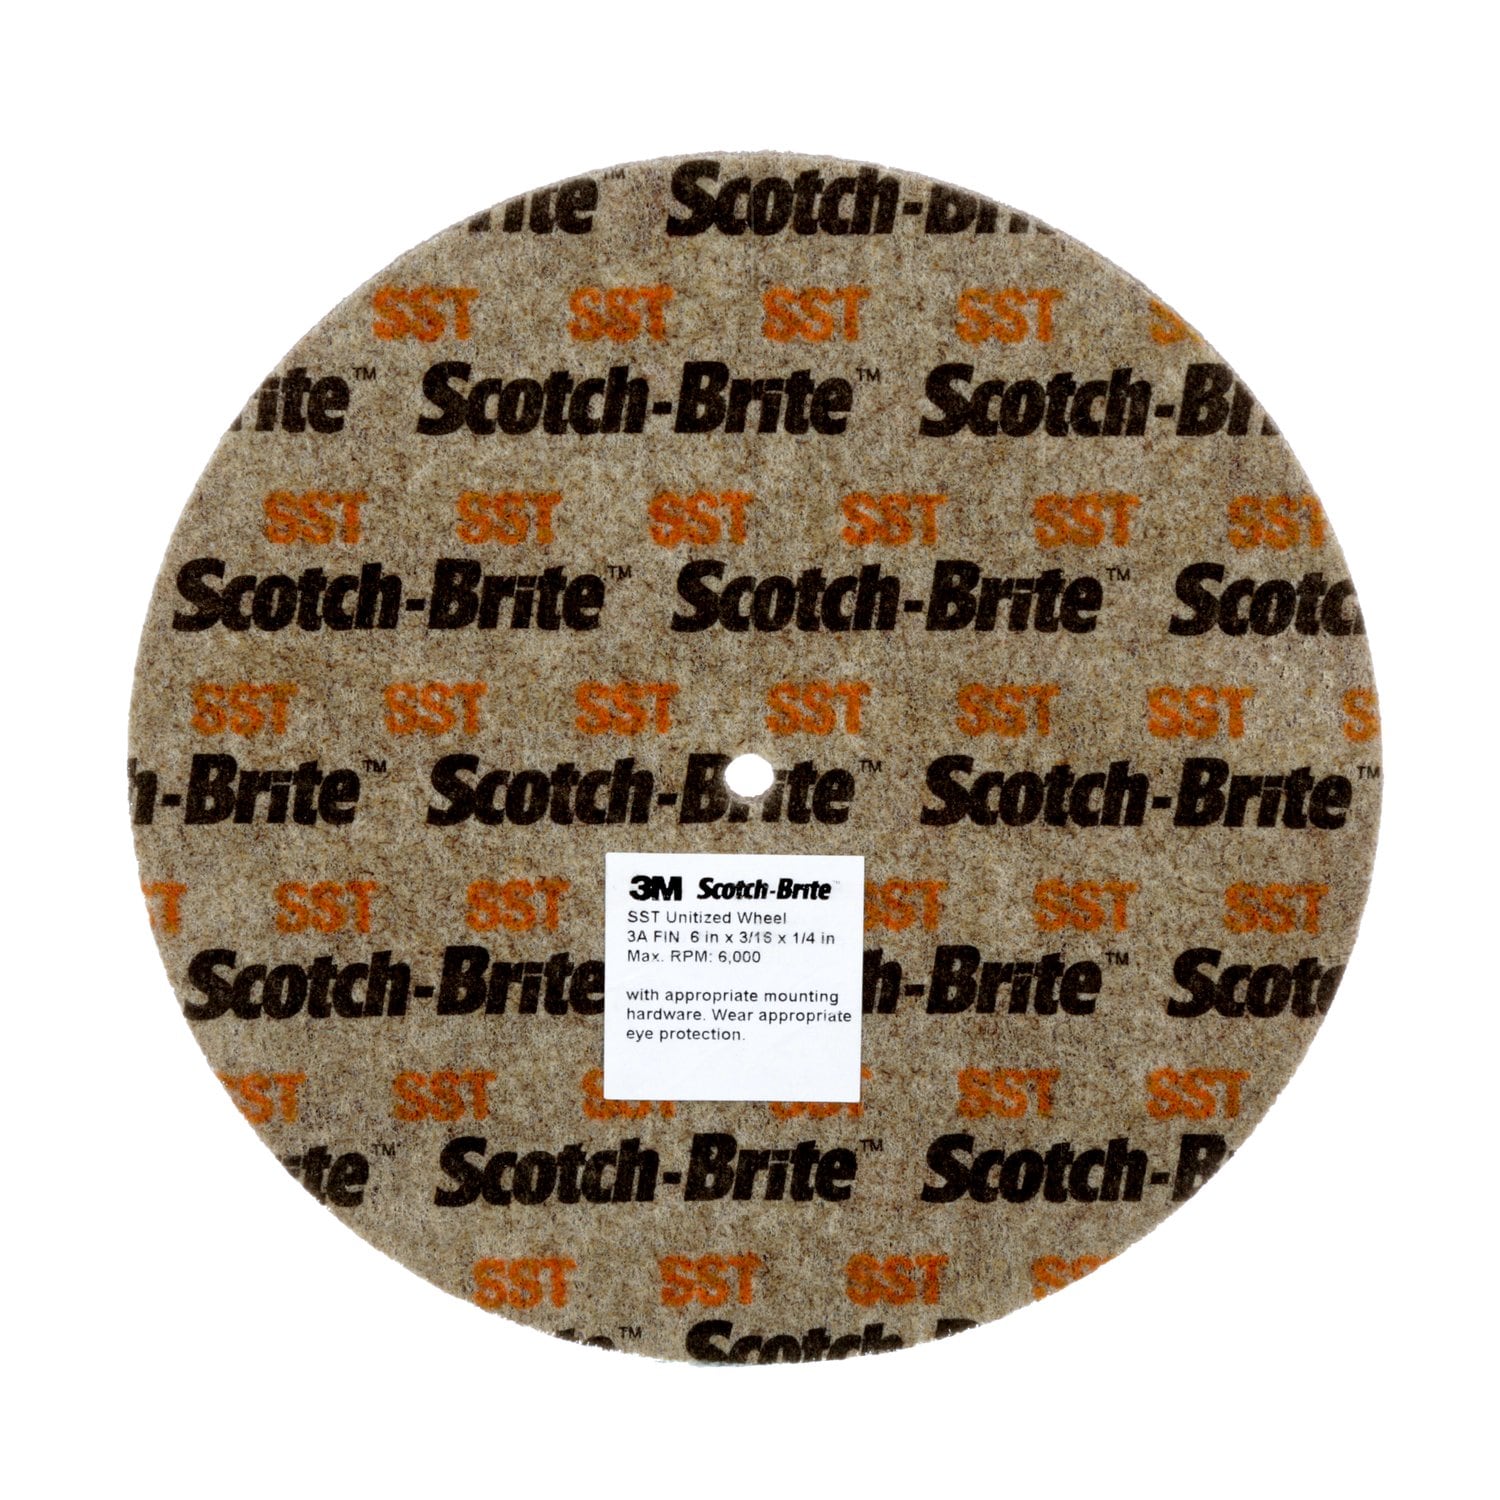 7010329179 - Scotch-Brite SST Unitized Wheel, 8 in x 1/4 in x 5/8 in 5A FIN, 8
ea/Case, SPR 022350A